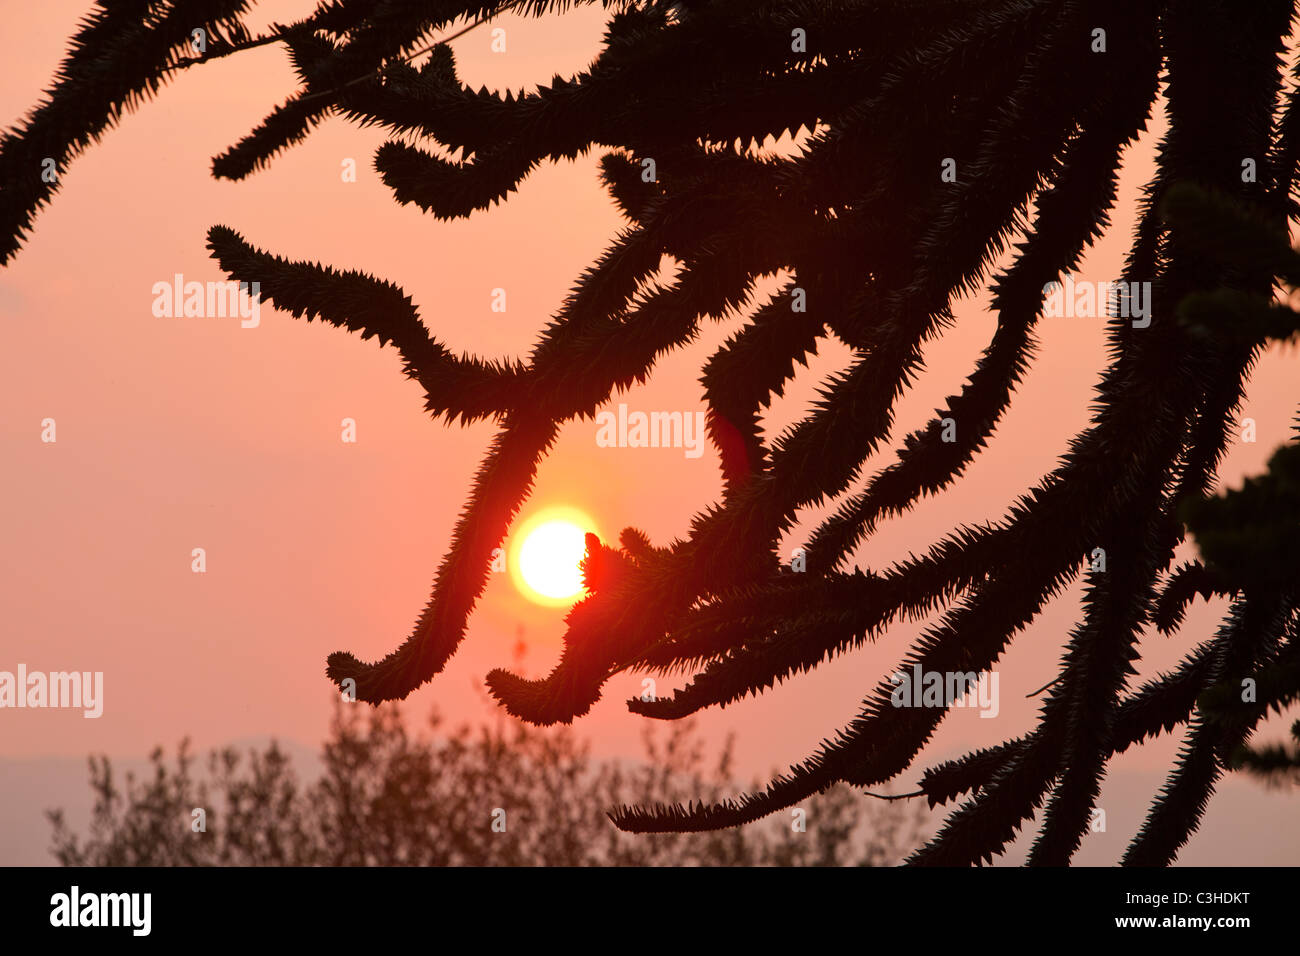 Puesta de sol a través de las ramas de un pehuén (Araucaria araucana) en Windermere, Cumbria, Reino Unido. Foto de stock